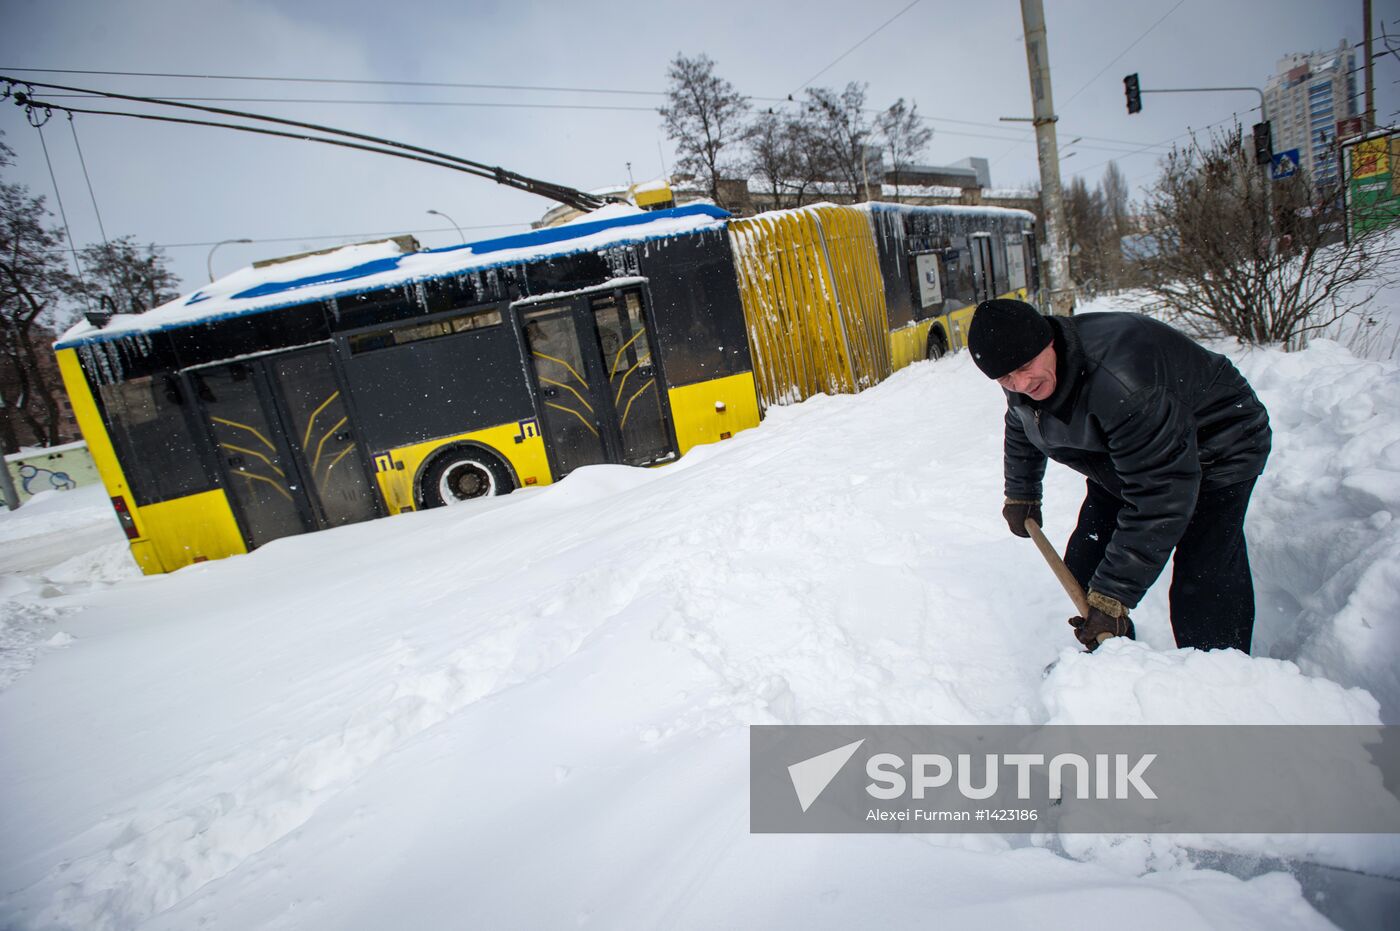 Snowfall aftermath in Kiev